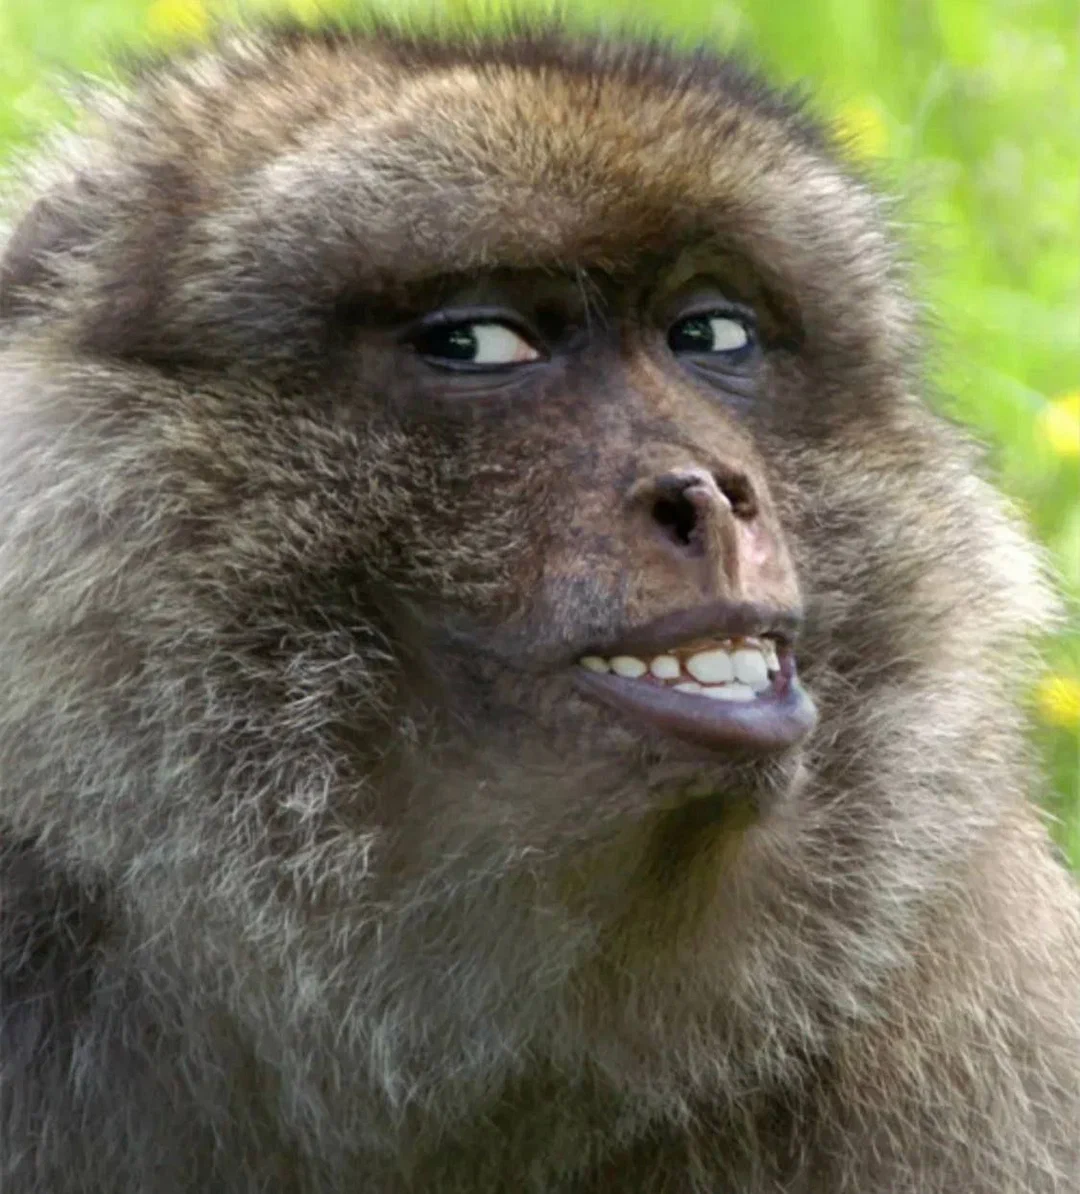 Вспышка оспы обезьян: все что нужно знать о заболевании